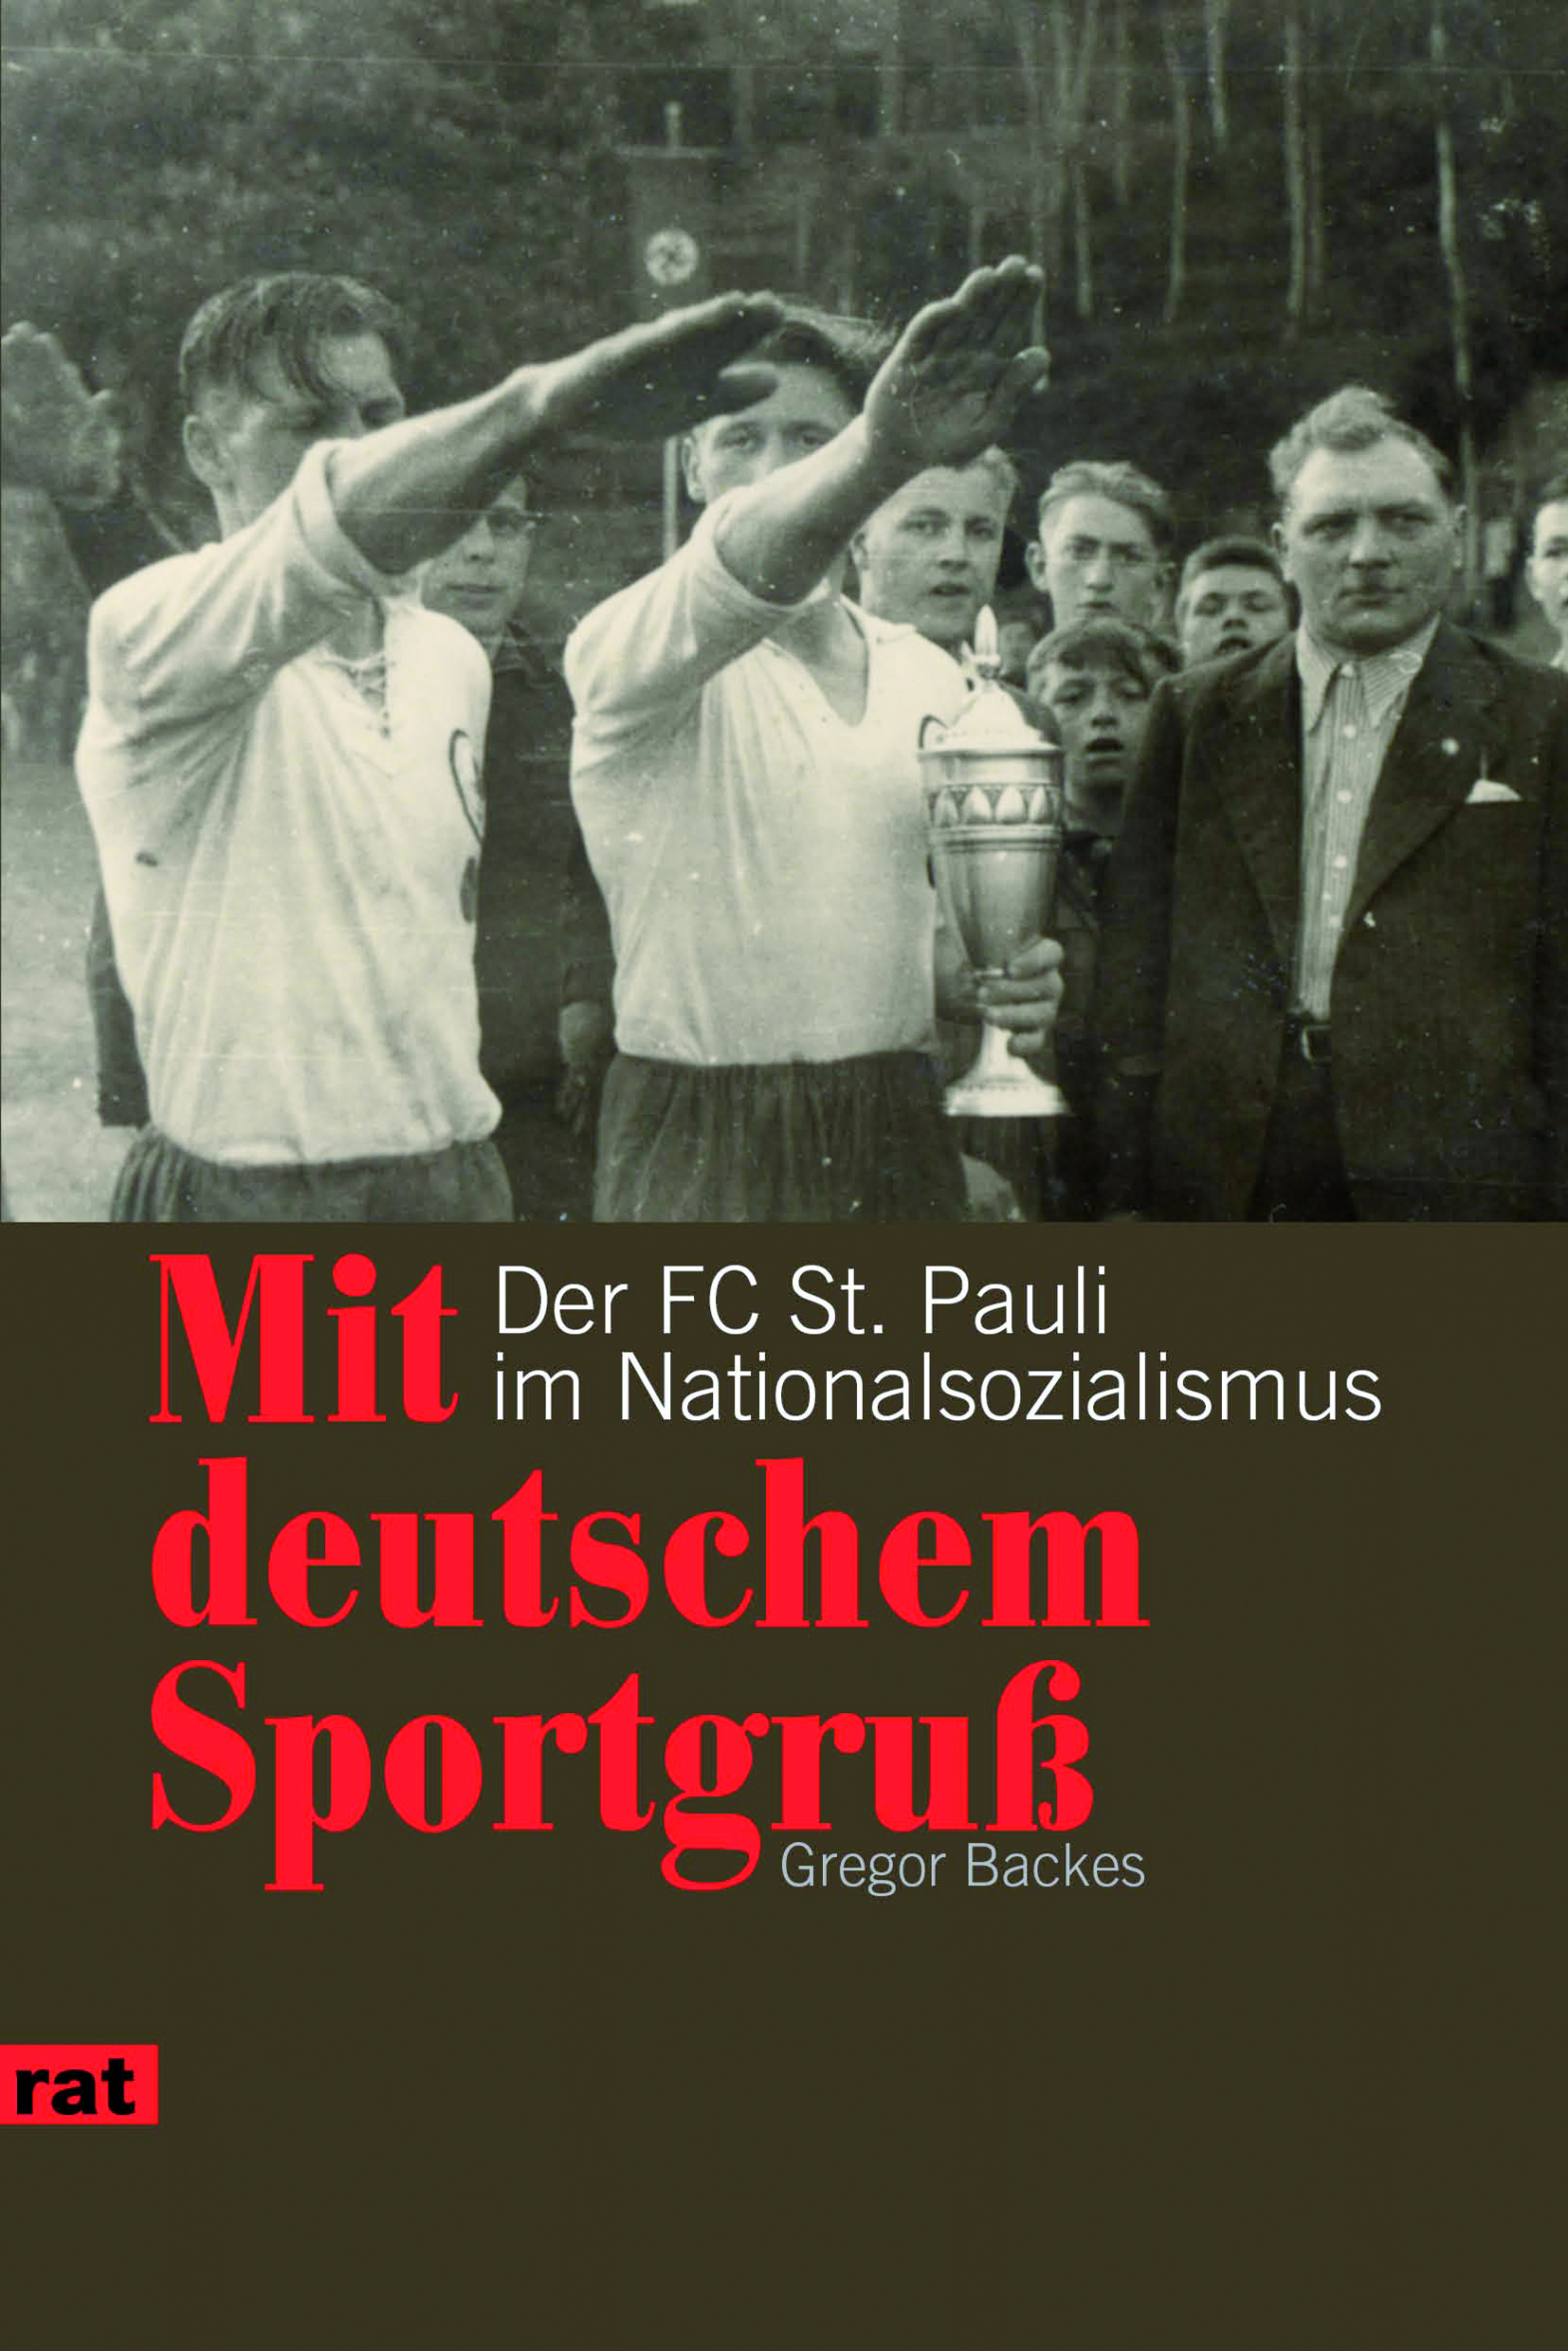 Gregor Backes: „Mit deutschem Sportgruß. Der FC St. Pauli im Nationalsozialismus“. Unrast Verlag / Edition 1910, 168 Seiten, 14 Euro (ISBN 978-3-89771-825-8)